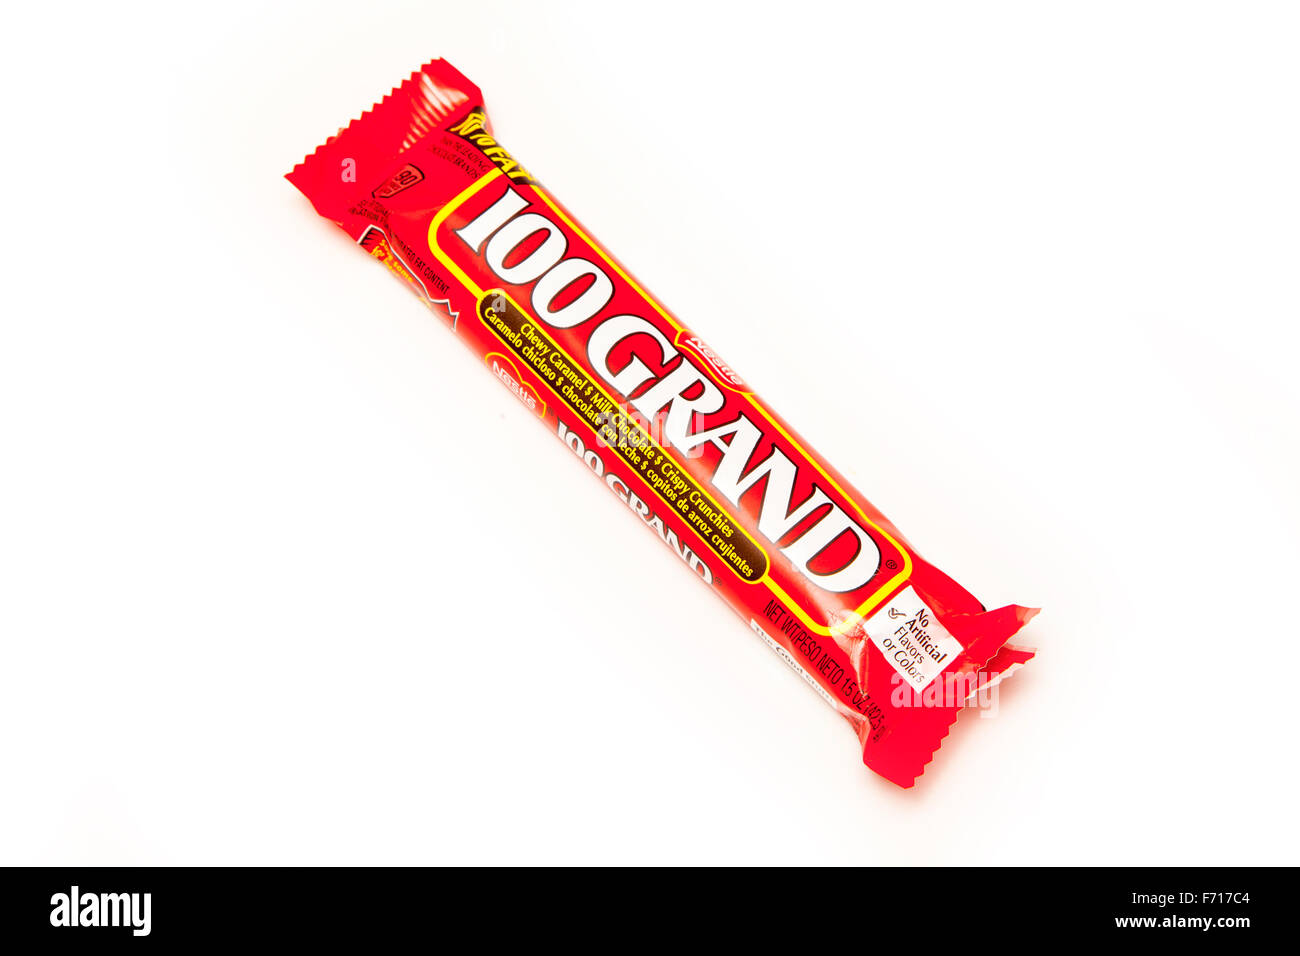 American candy 100 Grand Bar, ein Schokoriegel von Nestlé gemacht. Isoliert auf einem weißen Studio-Hintergrund. Stockfoto